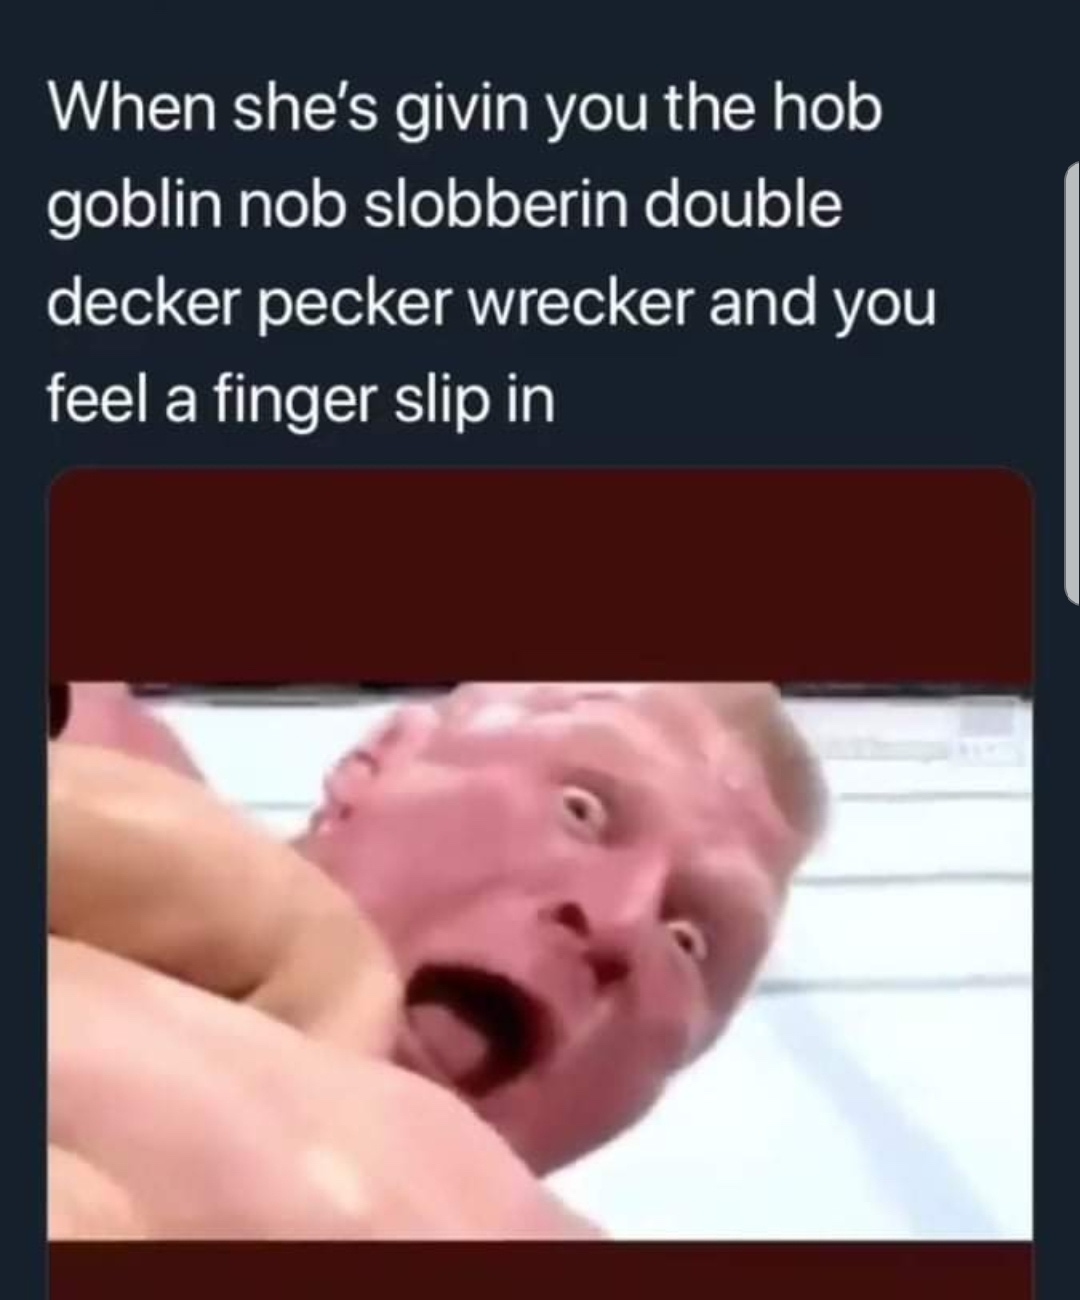 hob goblin nob slobberin double decker pecker wrecker - When she's givin you the hob goblin nob slobberin double decker pecker wrecker and you feel a finger slip in